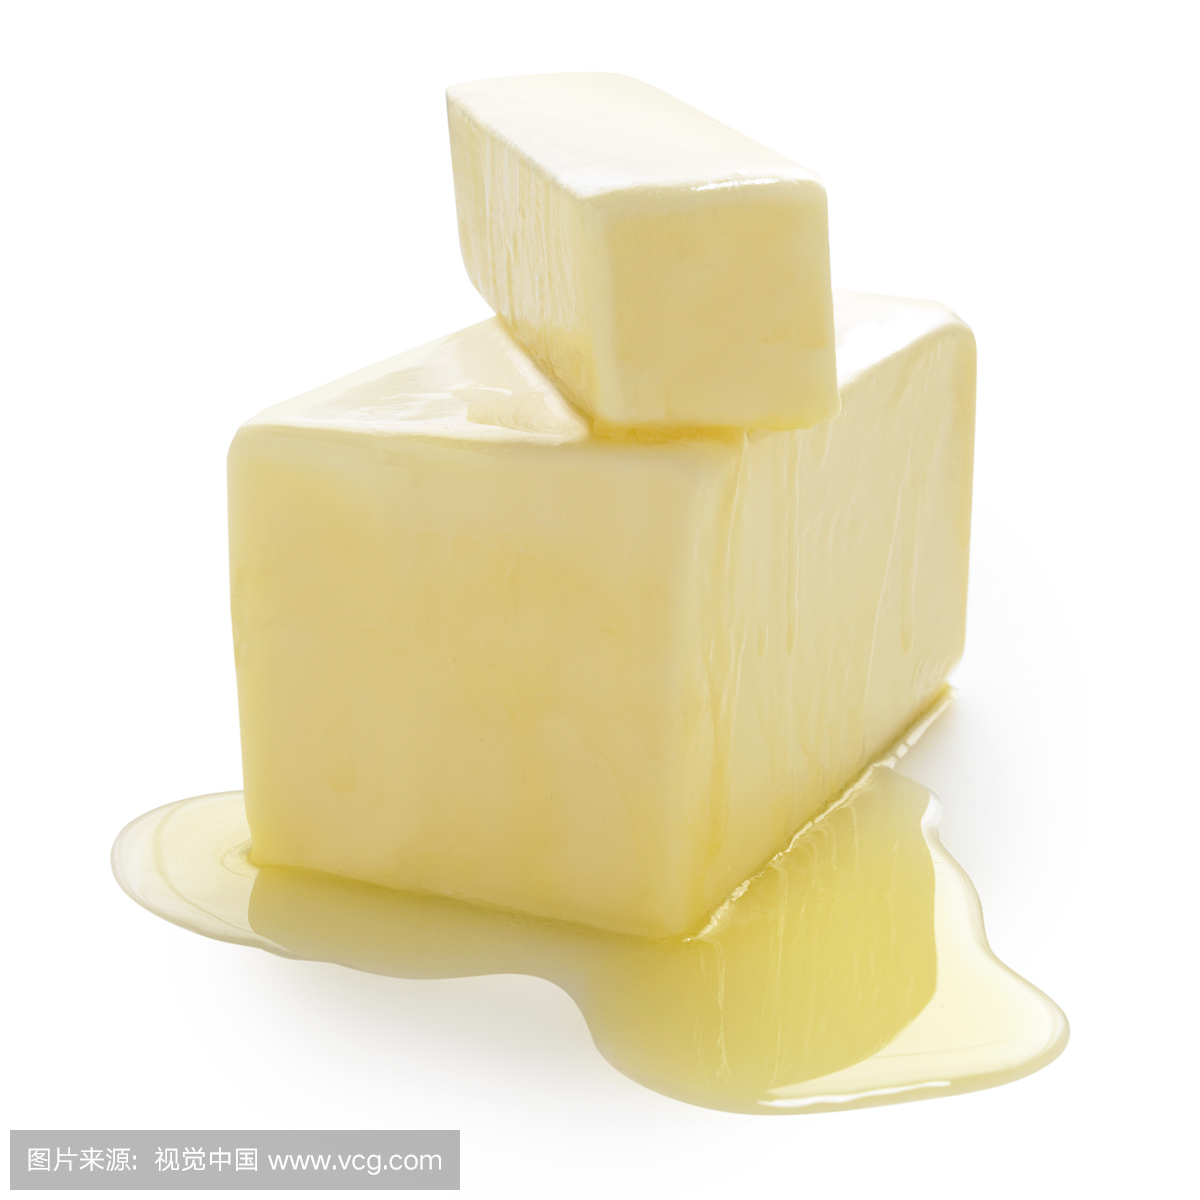 大块黄油与较小的块在上面,融化的黄油池,特写